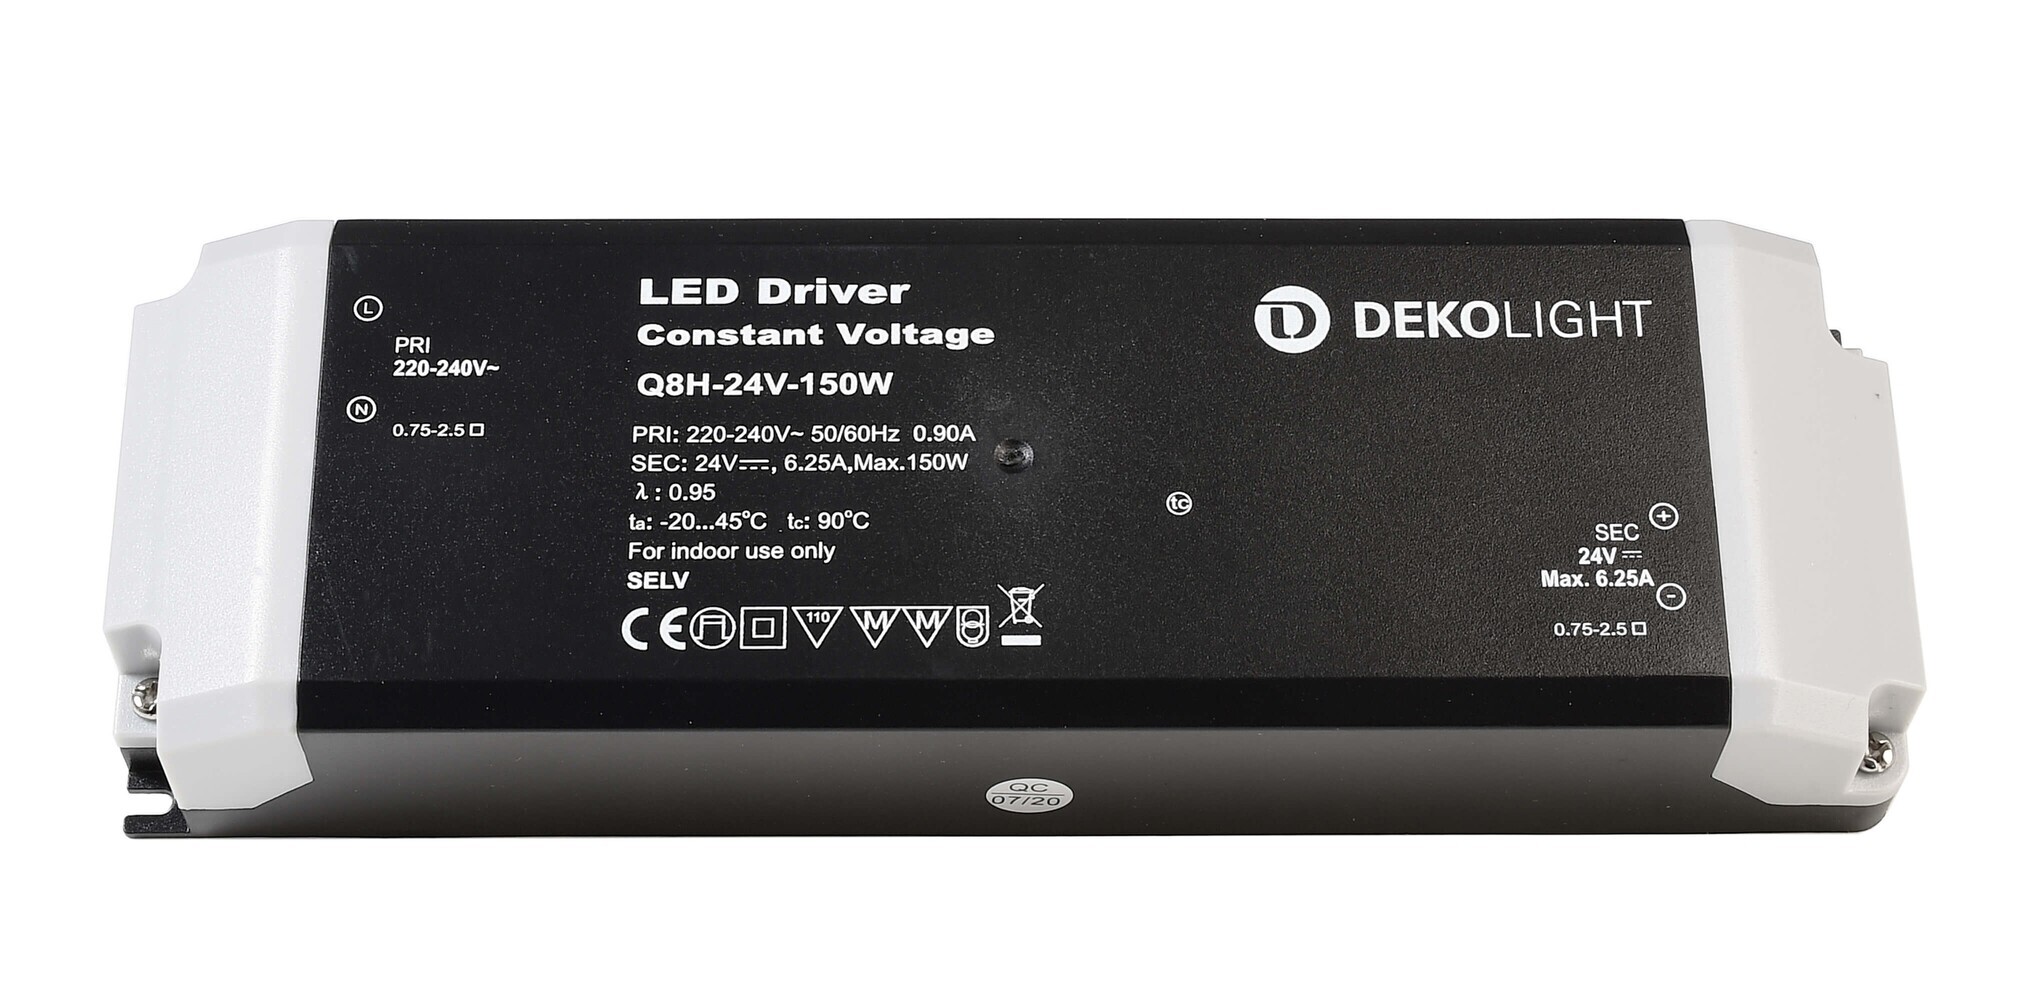 Hochwertiges spannungskonstantes LED Netzteil der Marke Deko-Light